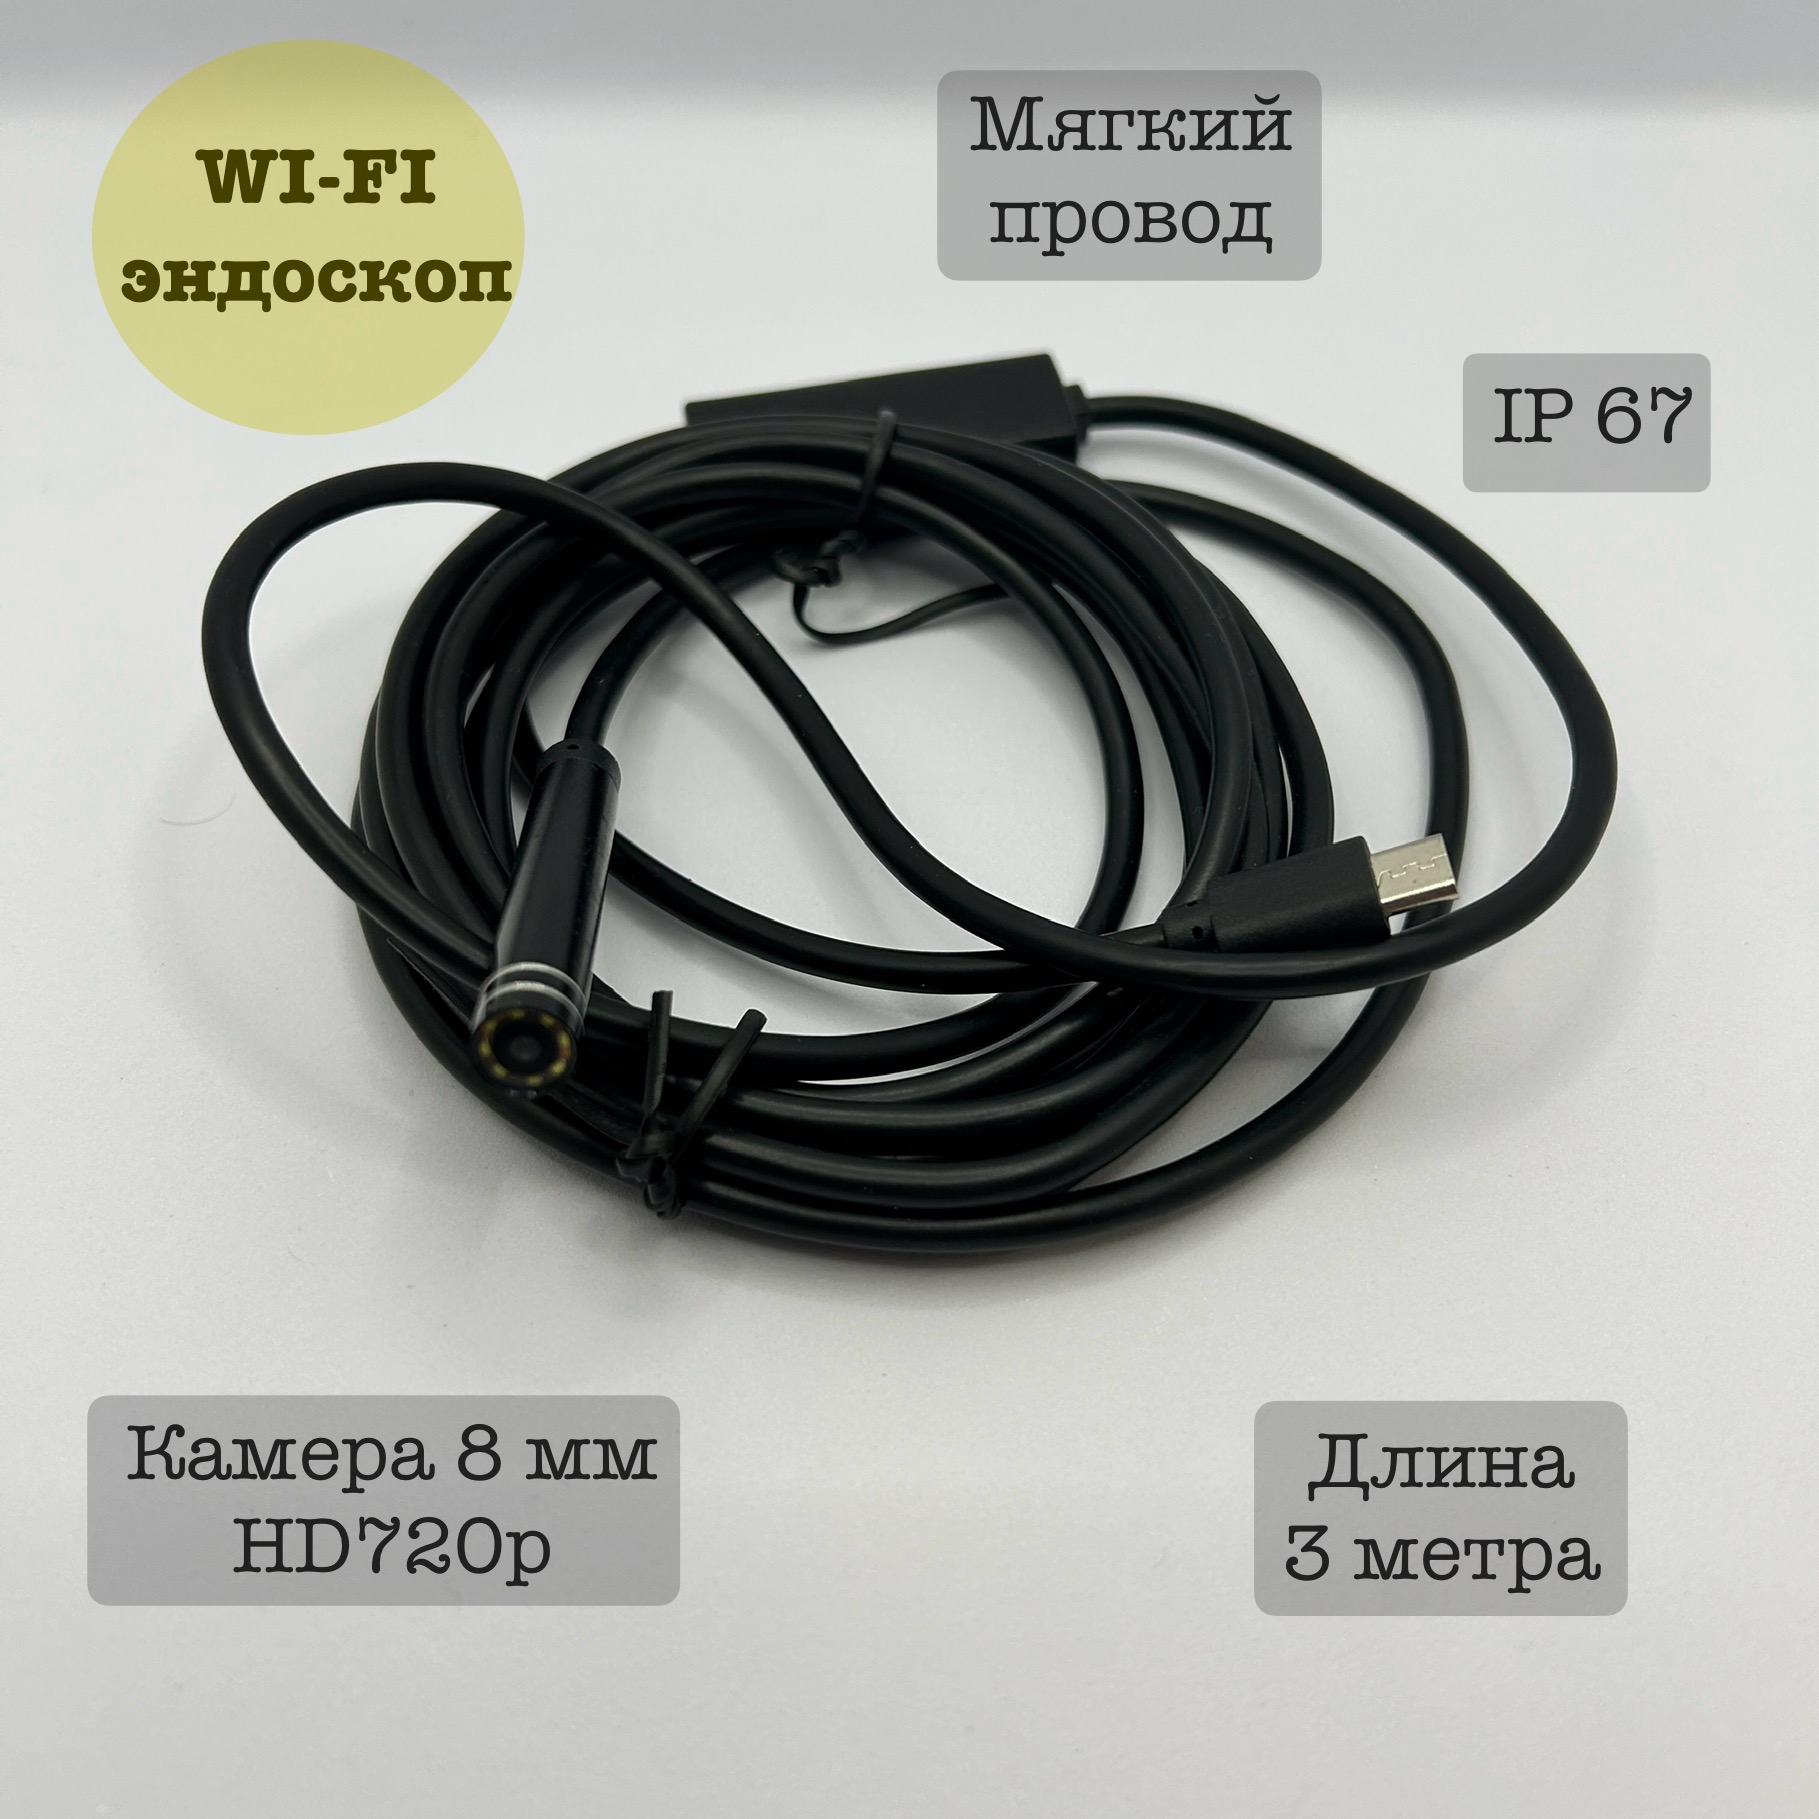 Эндоскоп Wi-fi для автомобиля YPC99-5, 3 метра, мягкий мягкий магнит